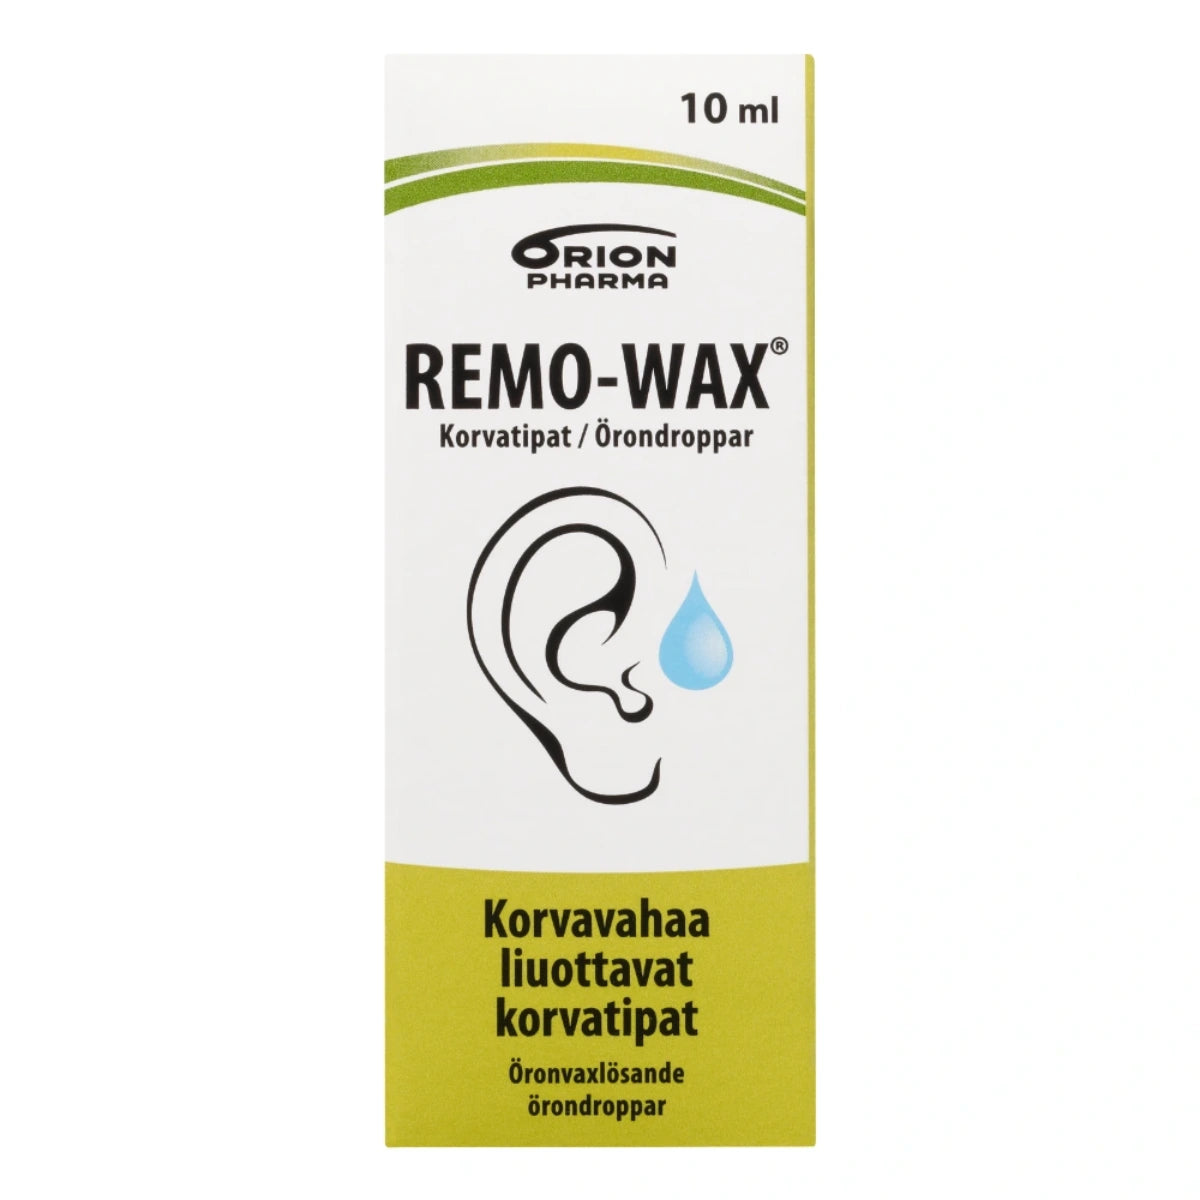 REMO-WAX korvatipat 10 ml liuottaa korvan vahatulpat nopeasti ja tehokkaasti ja pitää korvakäytävät puhtaina